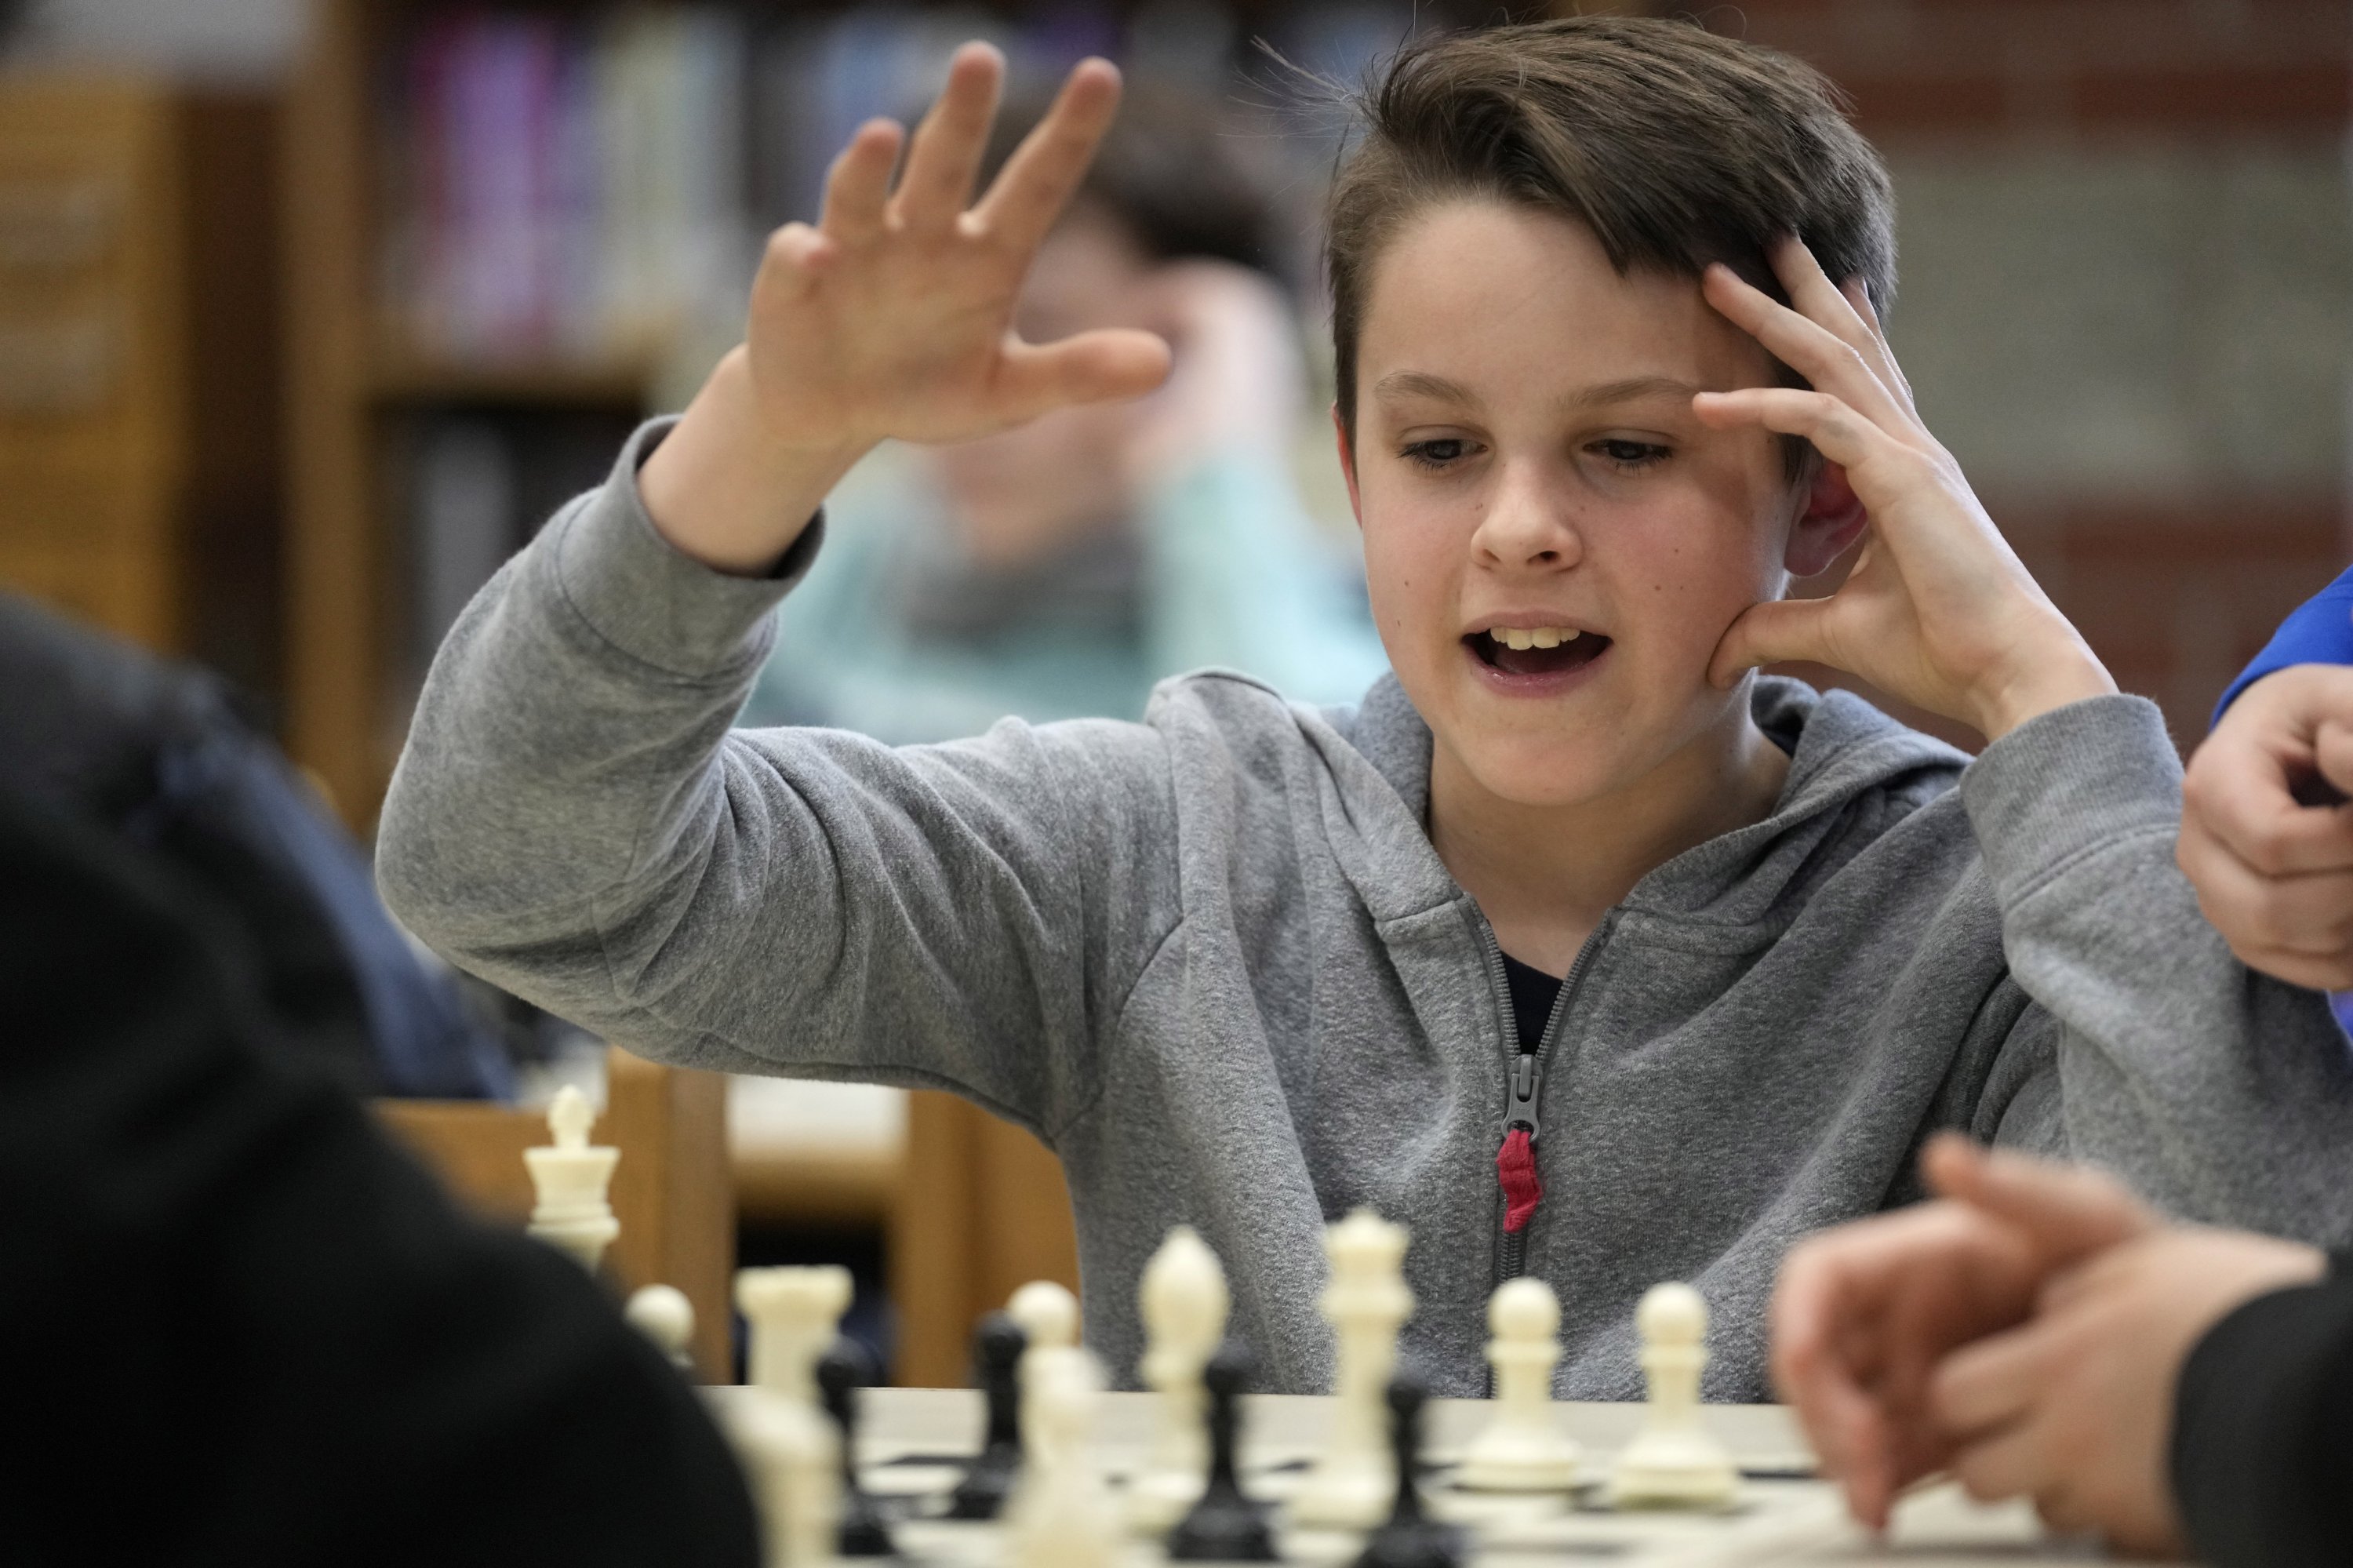 Eli Marquis, seorang siswa sekolah menengah Reeds brook, bereaksi selama pertandingan tim catur sepulang sekolah, Hampden, Maine, AS, 25 April 2023. (Foto AP)